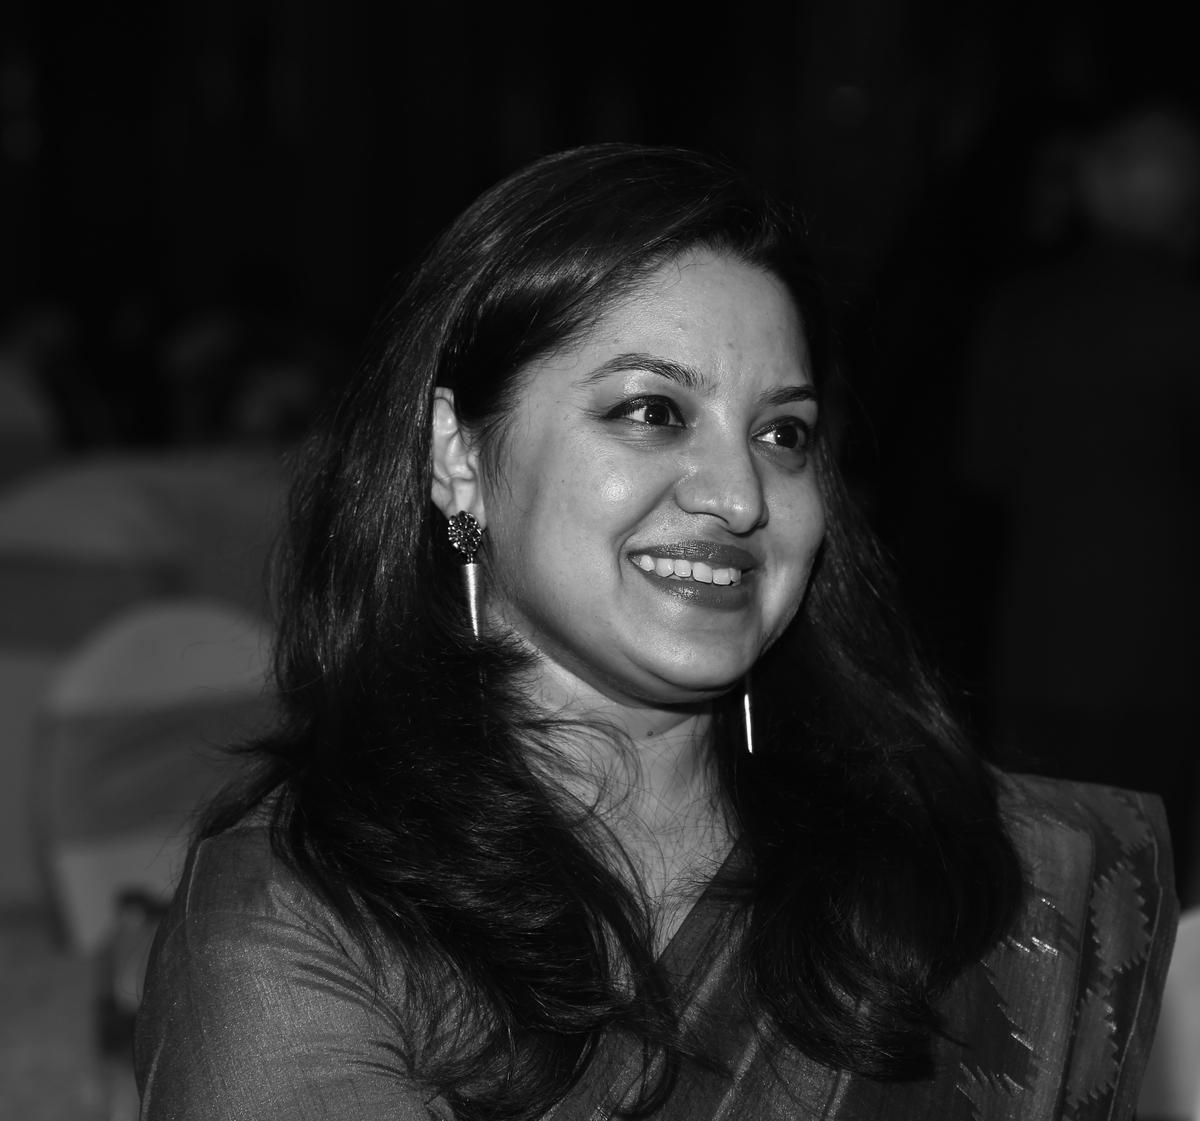 Curator Shailka Mishra